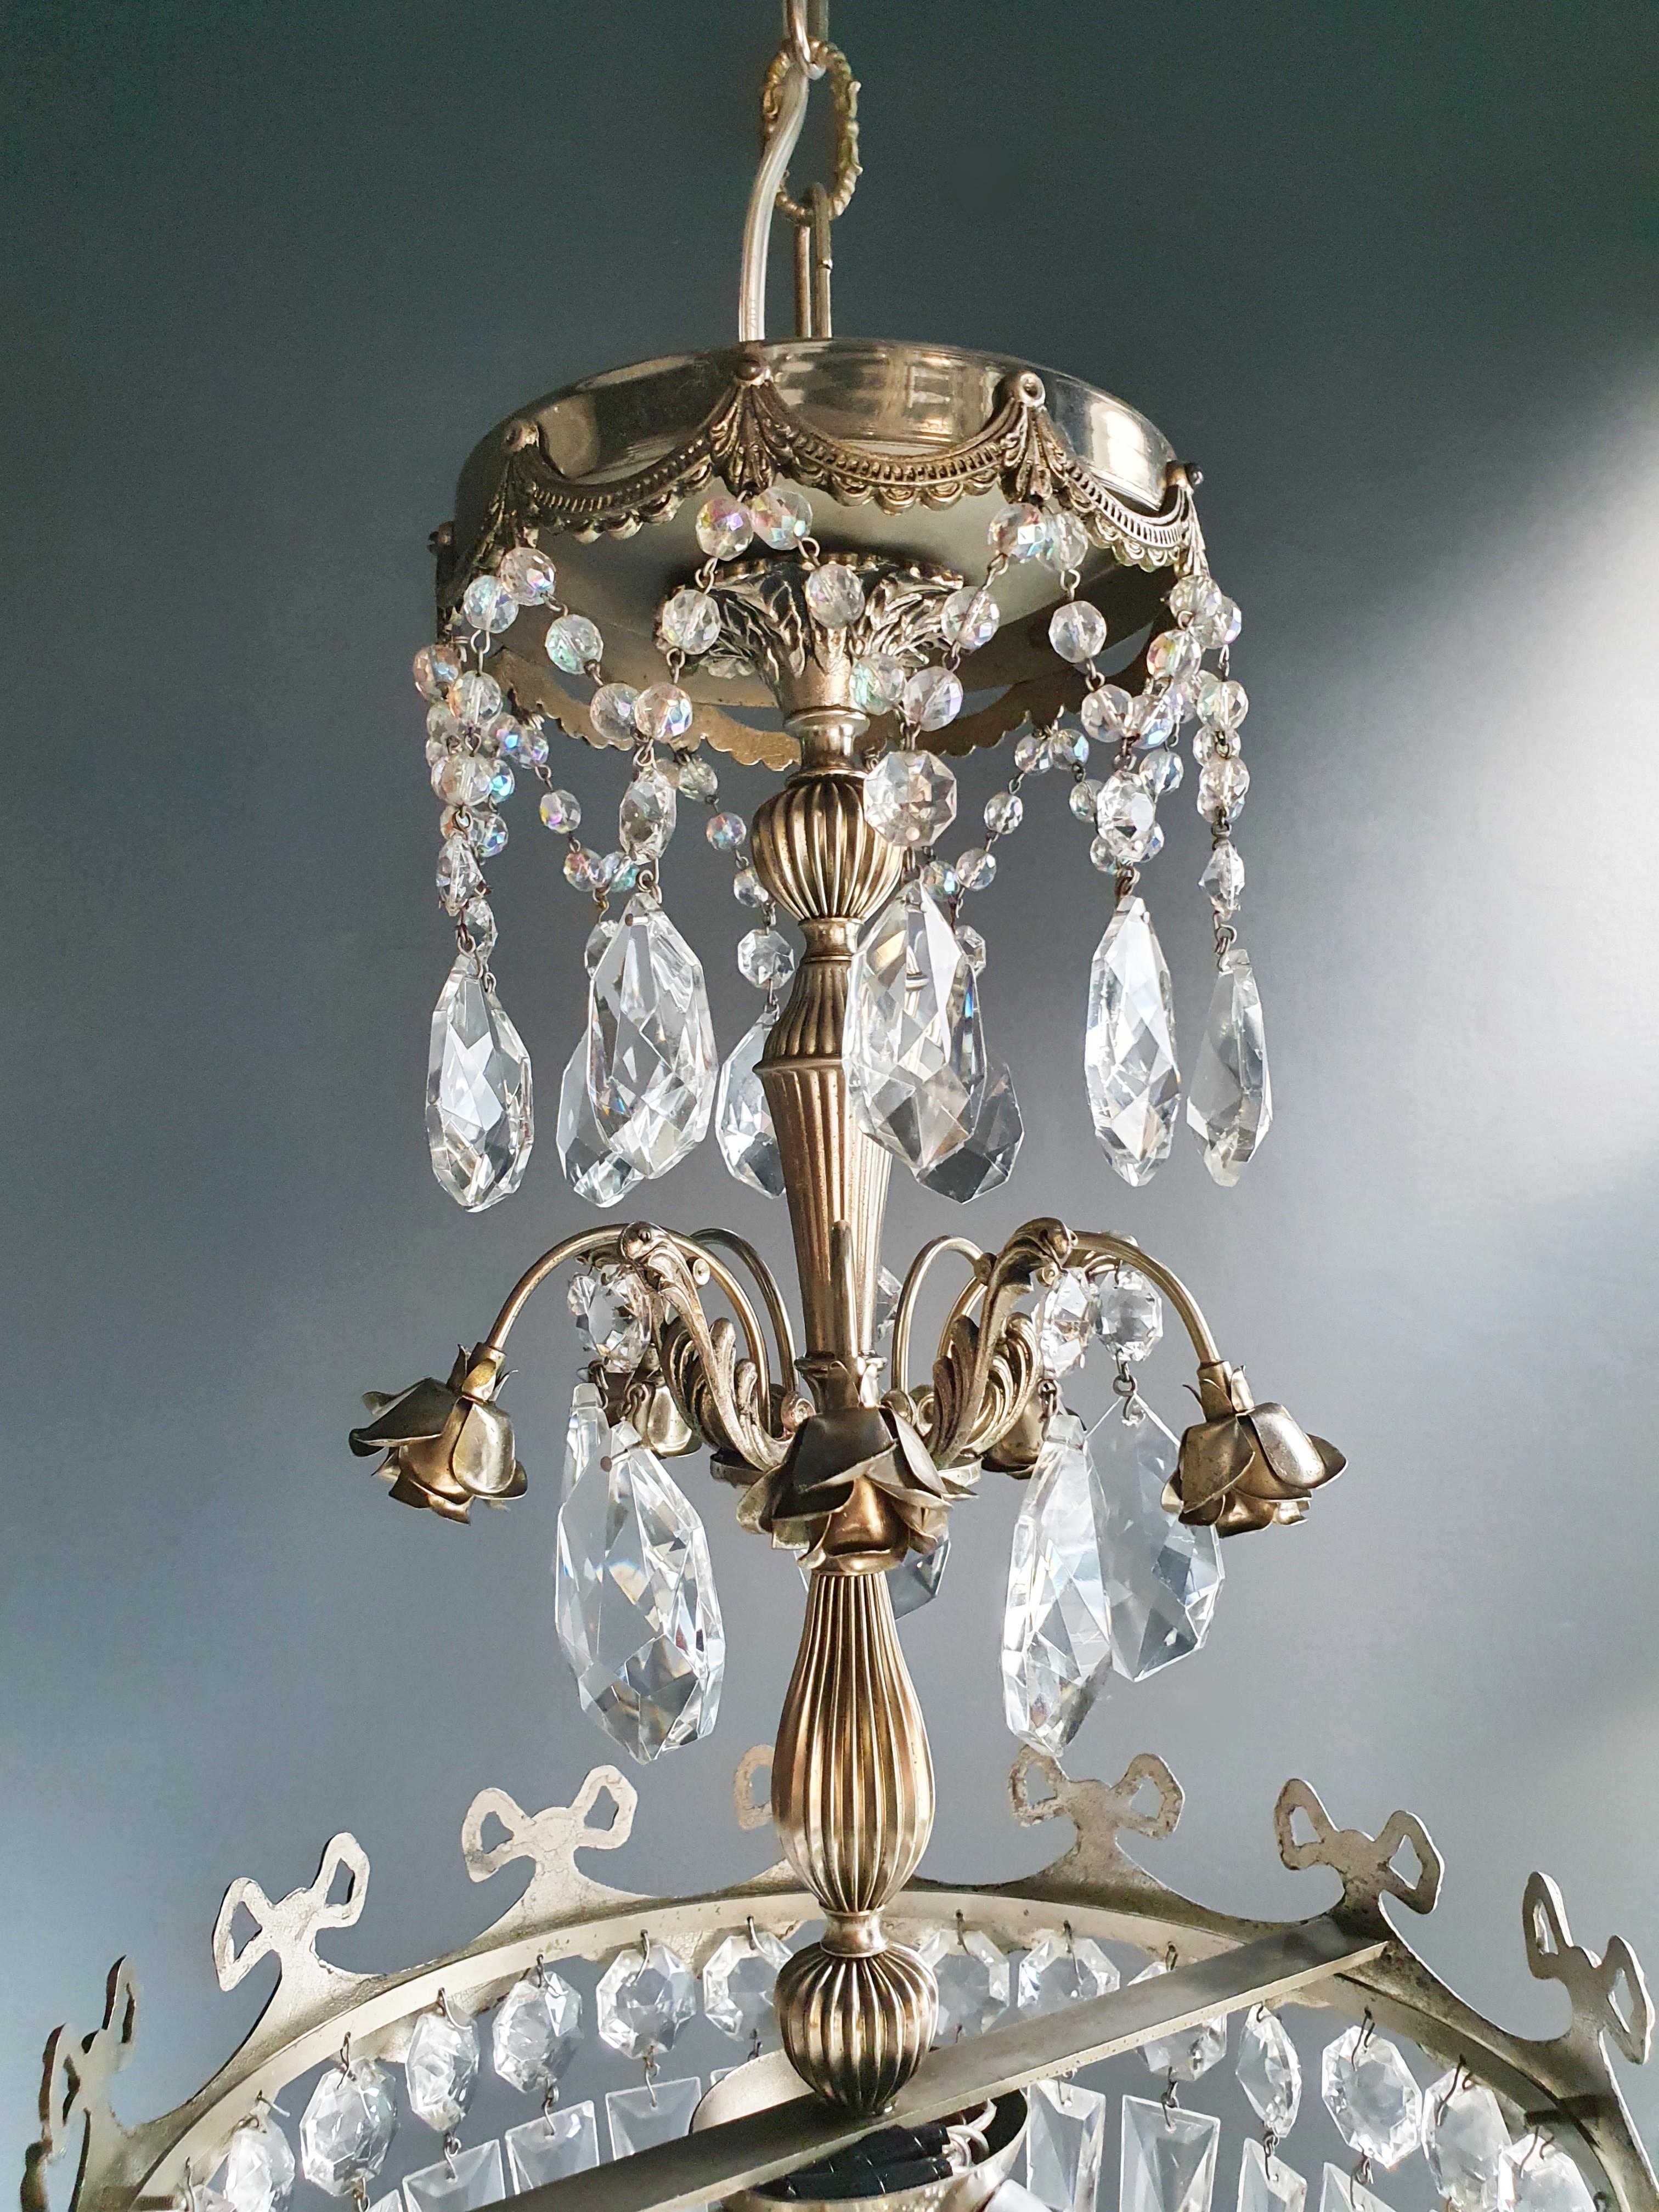 European Silver Rose Brass Crystal Chandelier Antique Ceiling Lamp Lustre Art Nouveau